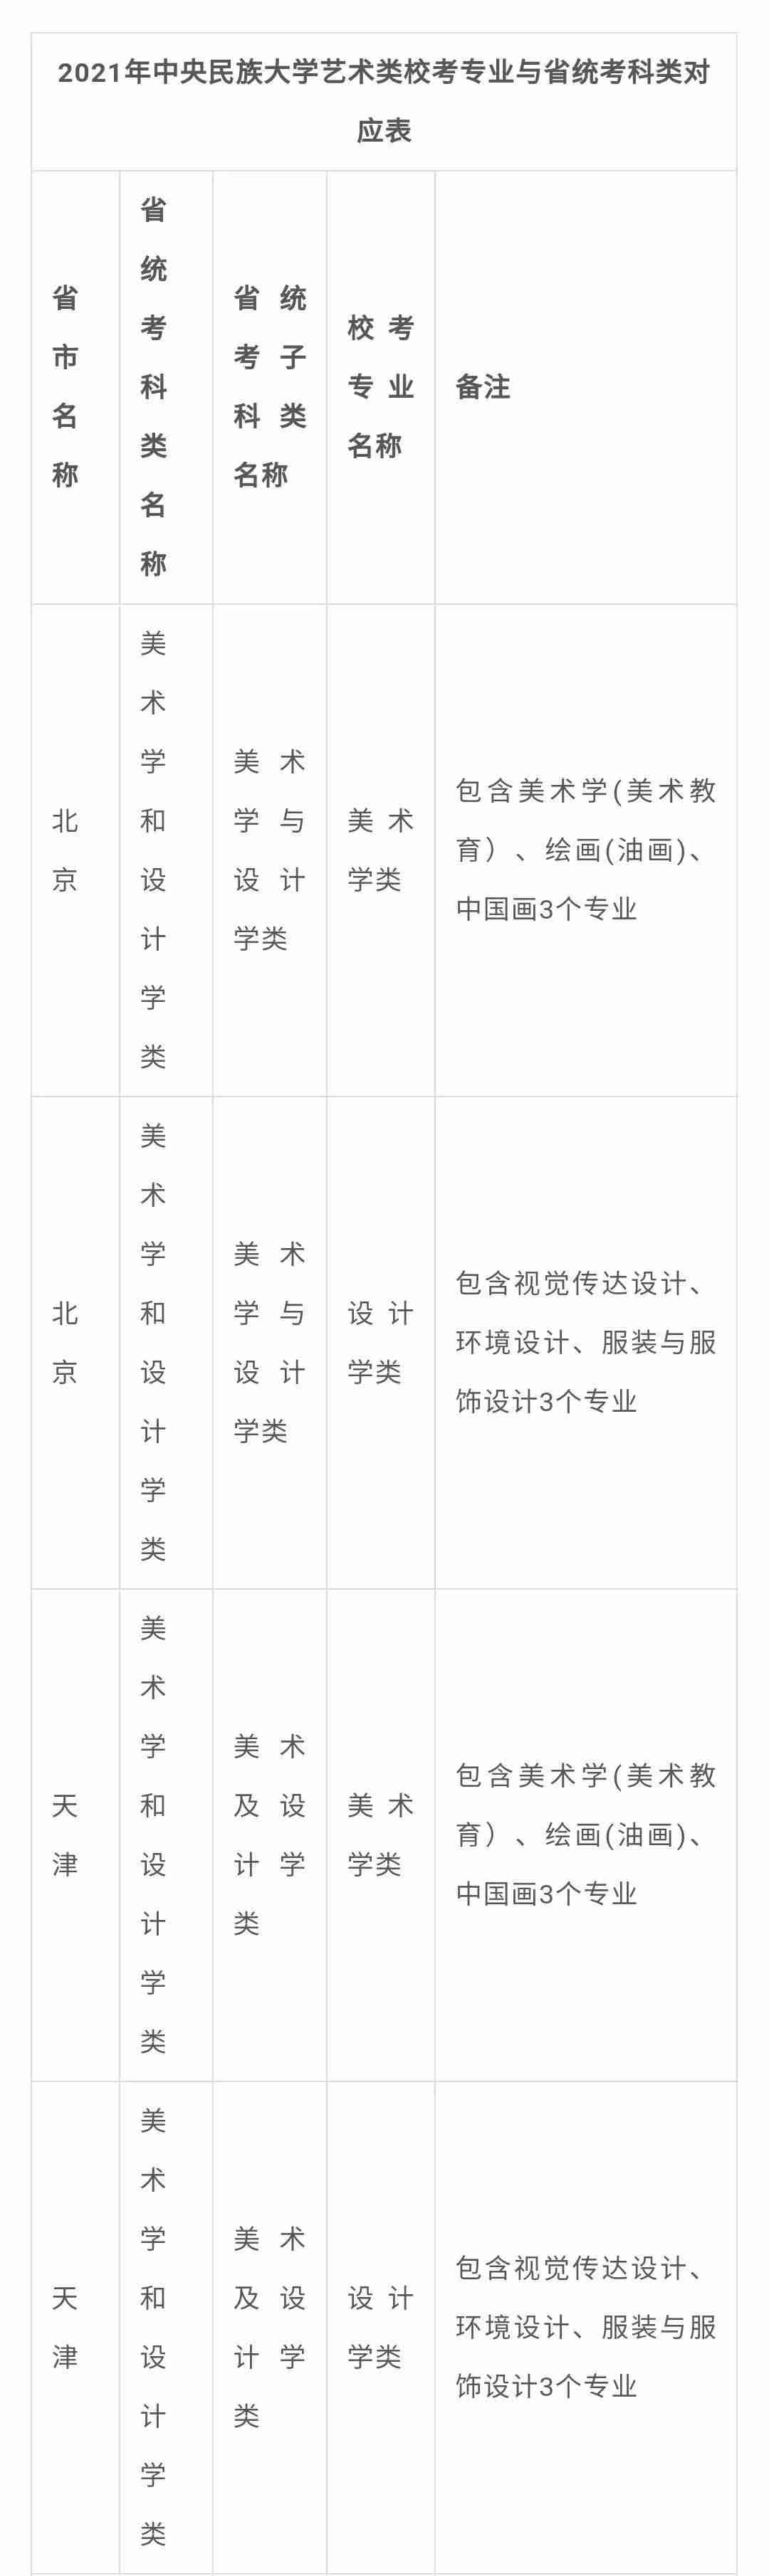 北京画室整理|中央民族大学2021年艺术类专业与各省统考科类对应表,02